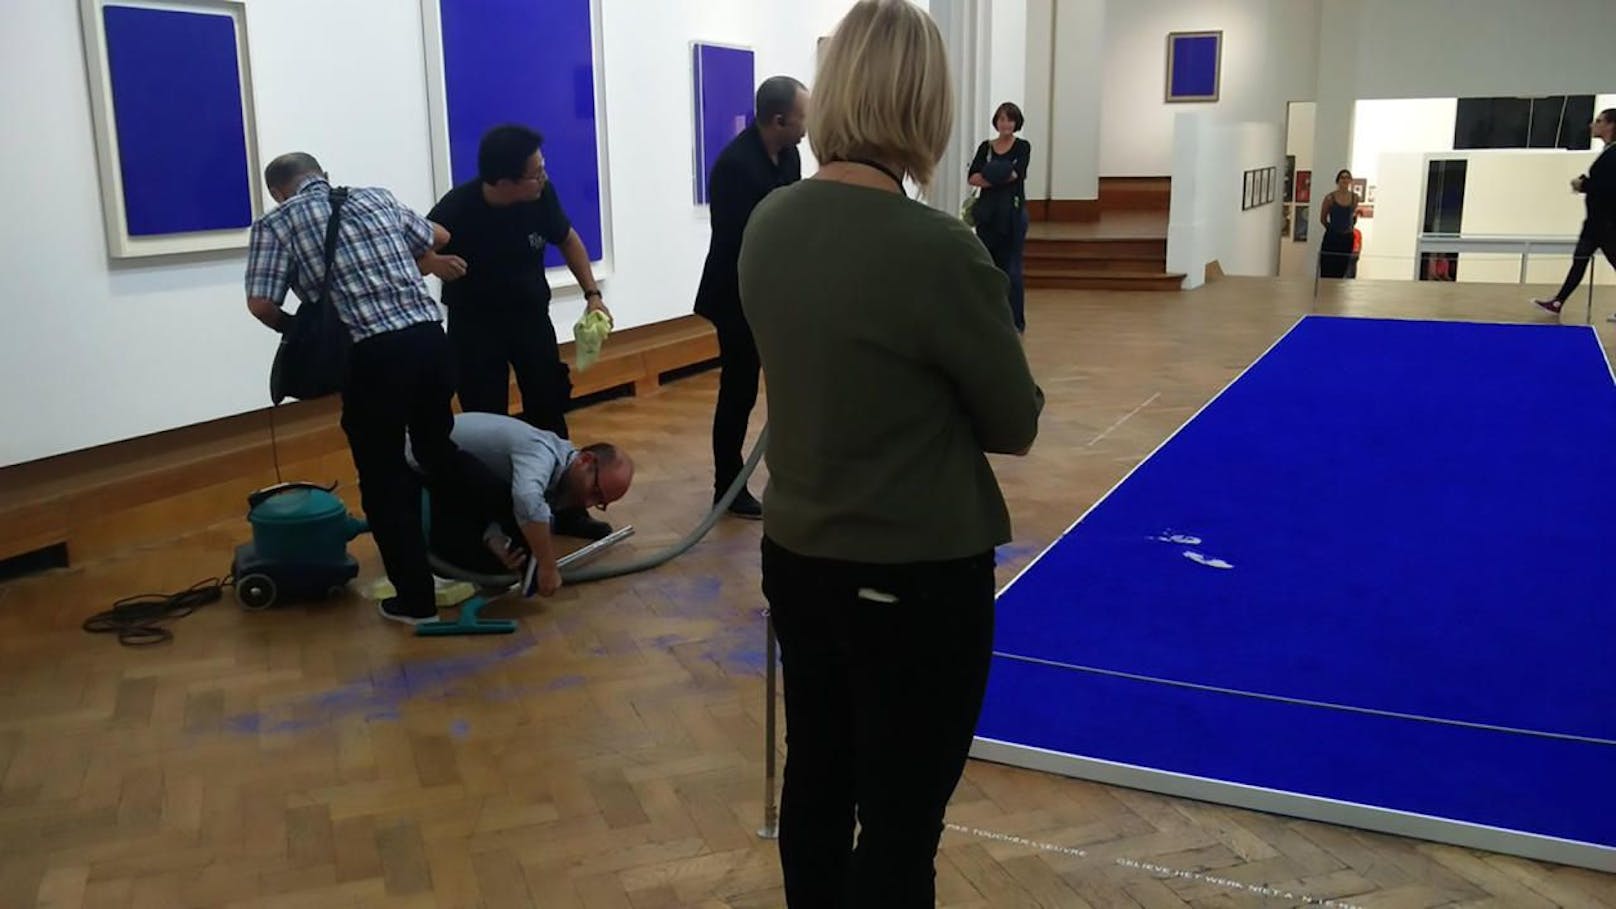 Infarkt-Alarm bei der Museumsleitung im &quot;Bozar&quot; in Brüssel: Der Besucher ist in das Kunstwerk gestolpert und hat die blaue Farbe im Gebäude verteilt! 